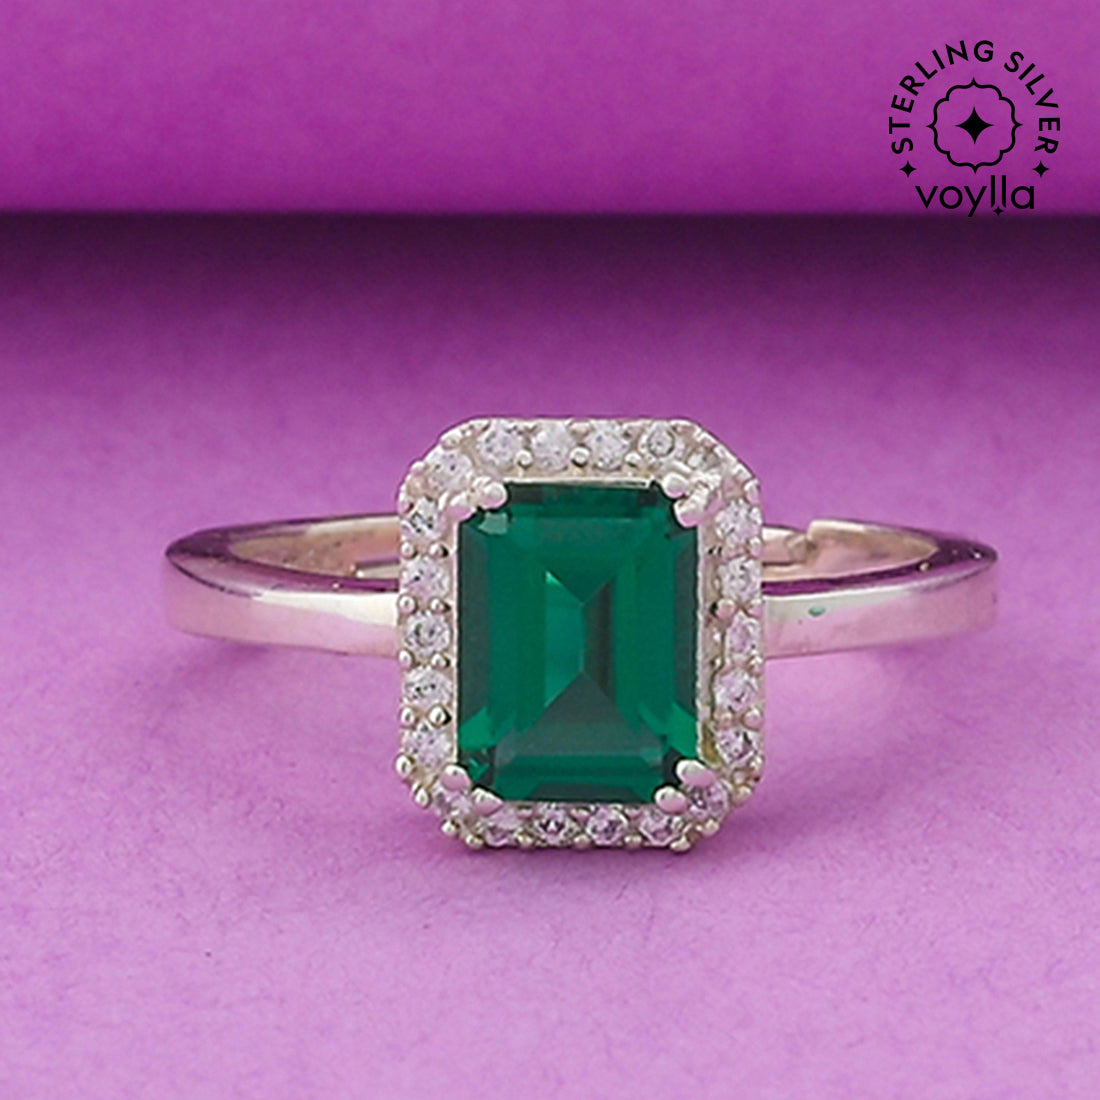 7-Stone Green & White Diamond Anniversary Wedding Ring